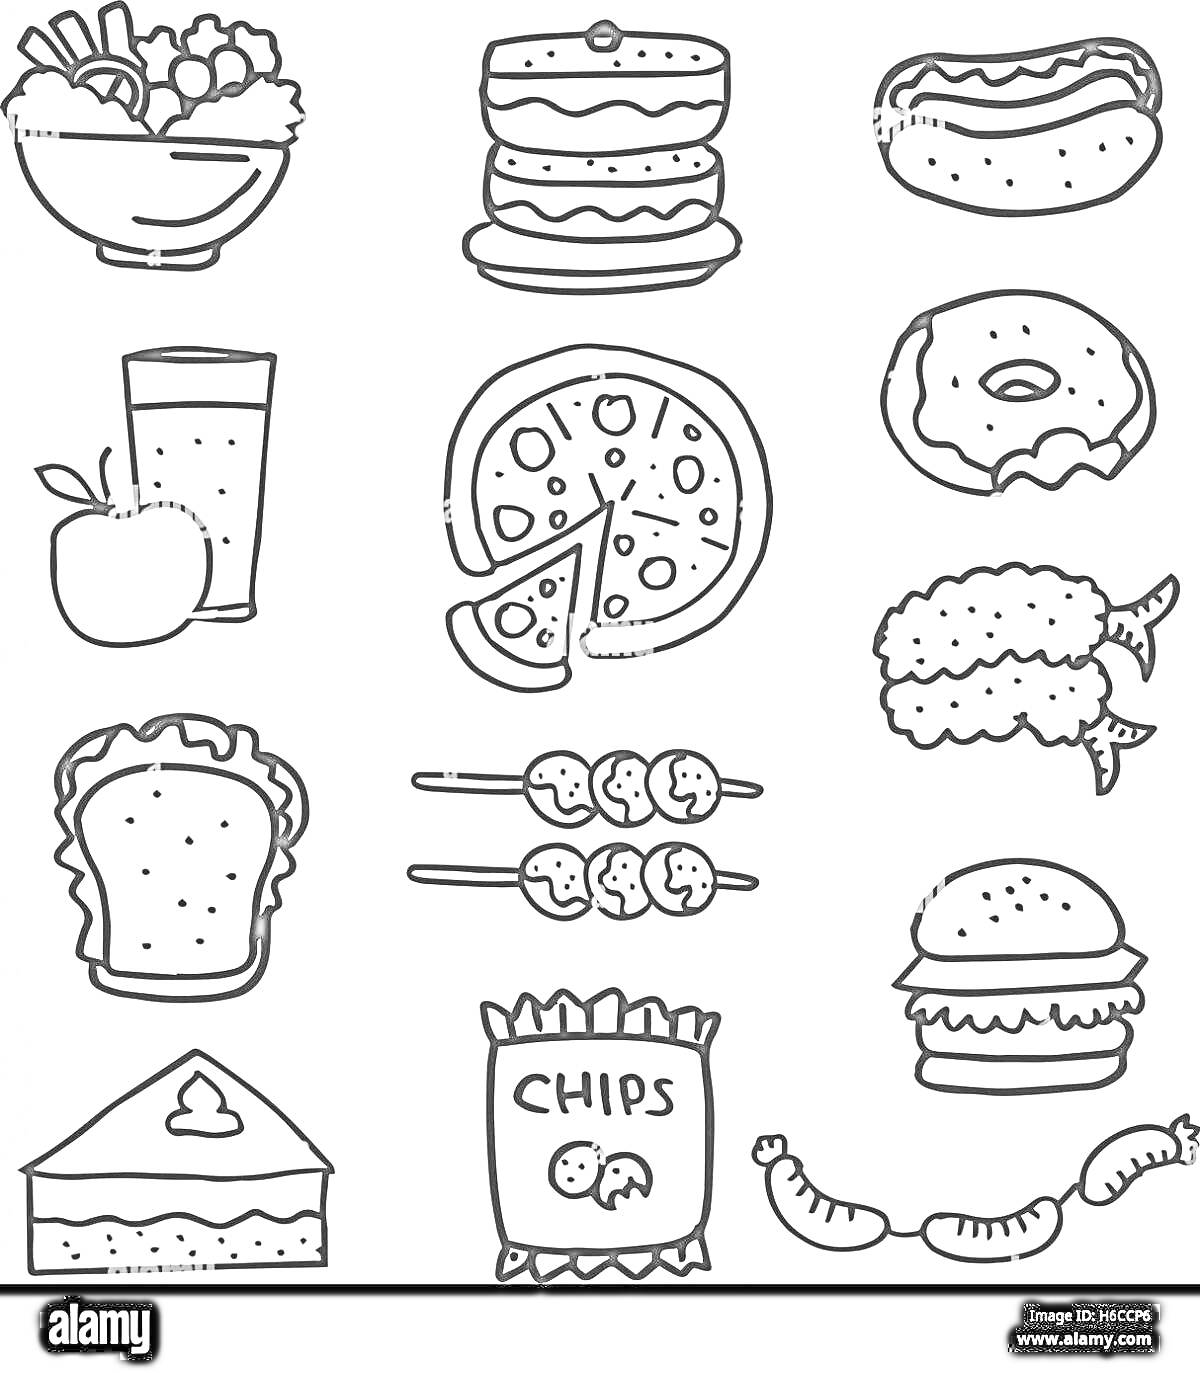 Блюда фаст-фуда: миска с салатом, торт из двух слоев, хот-дог, яблоко и стакан с напитком, пицца, пончик, куриные крылышки, сэндвич, шашлык, пакетик чипсов, бургер, пирожное, сосиска